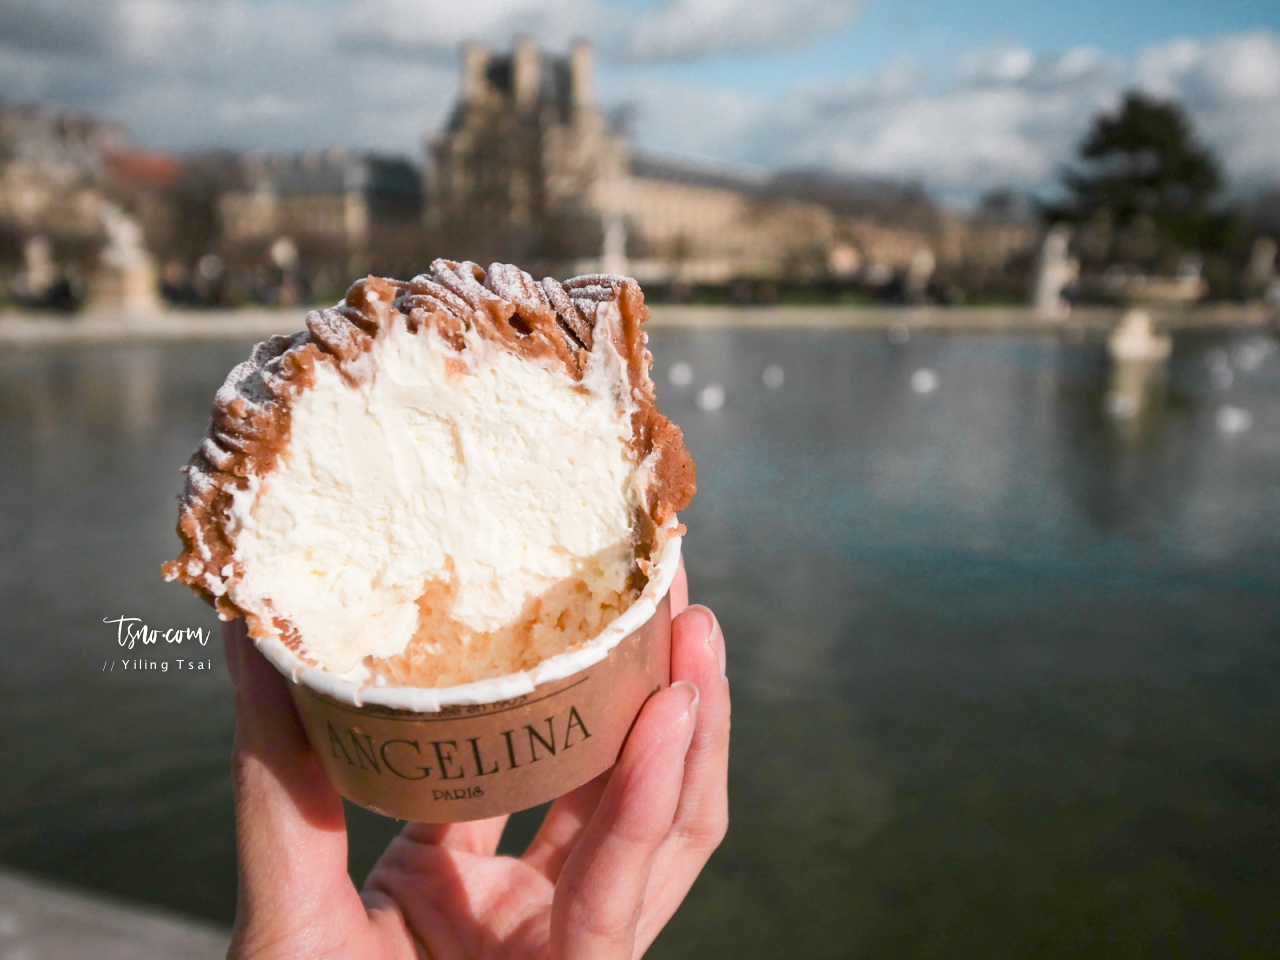 法國巴黎甜點推薦 Angelina Paris 經典百年甜點 招牌巧克力、蒙布朗